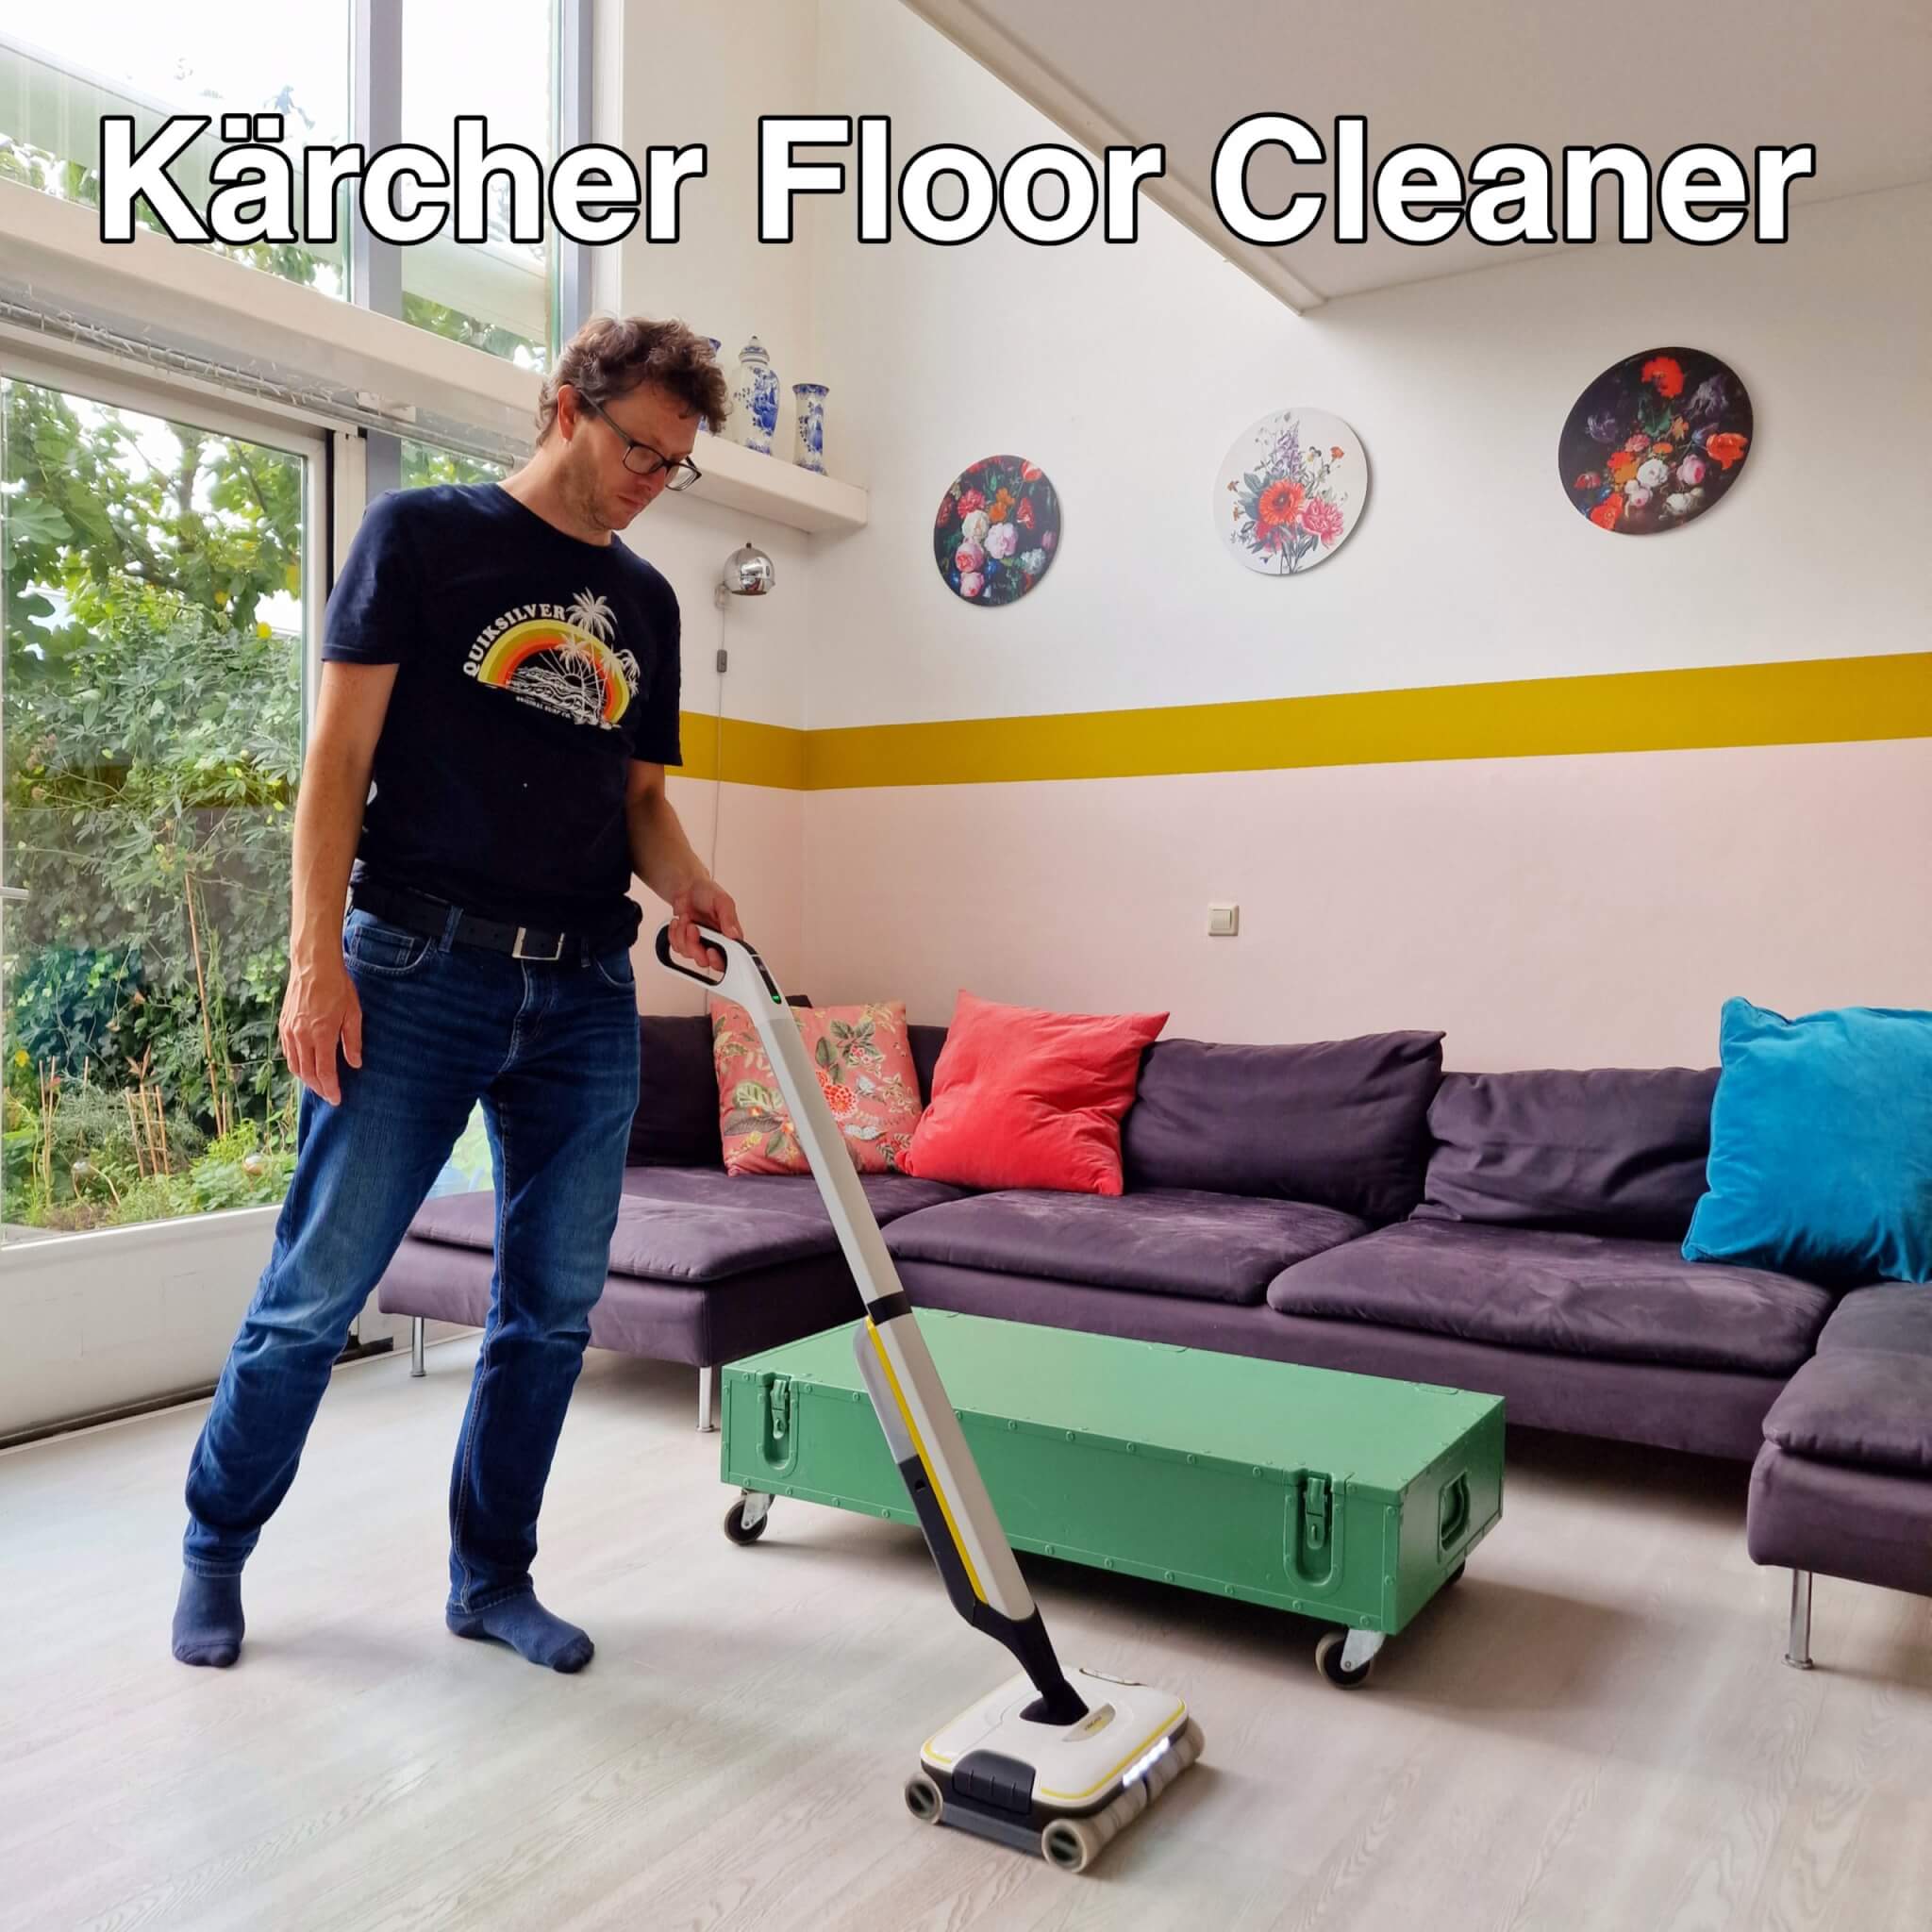 Doornen Wizard Woning Kärcher Floor Cleaner: je vloer schoonmaken met één apparaat Leuk met kids